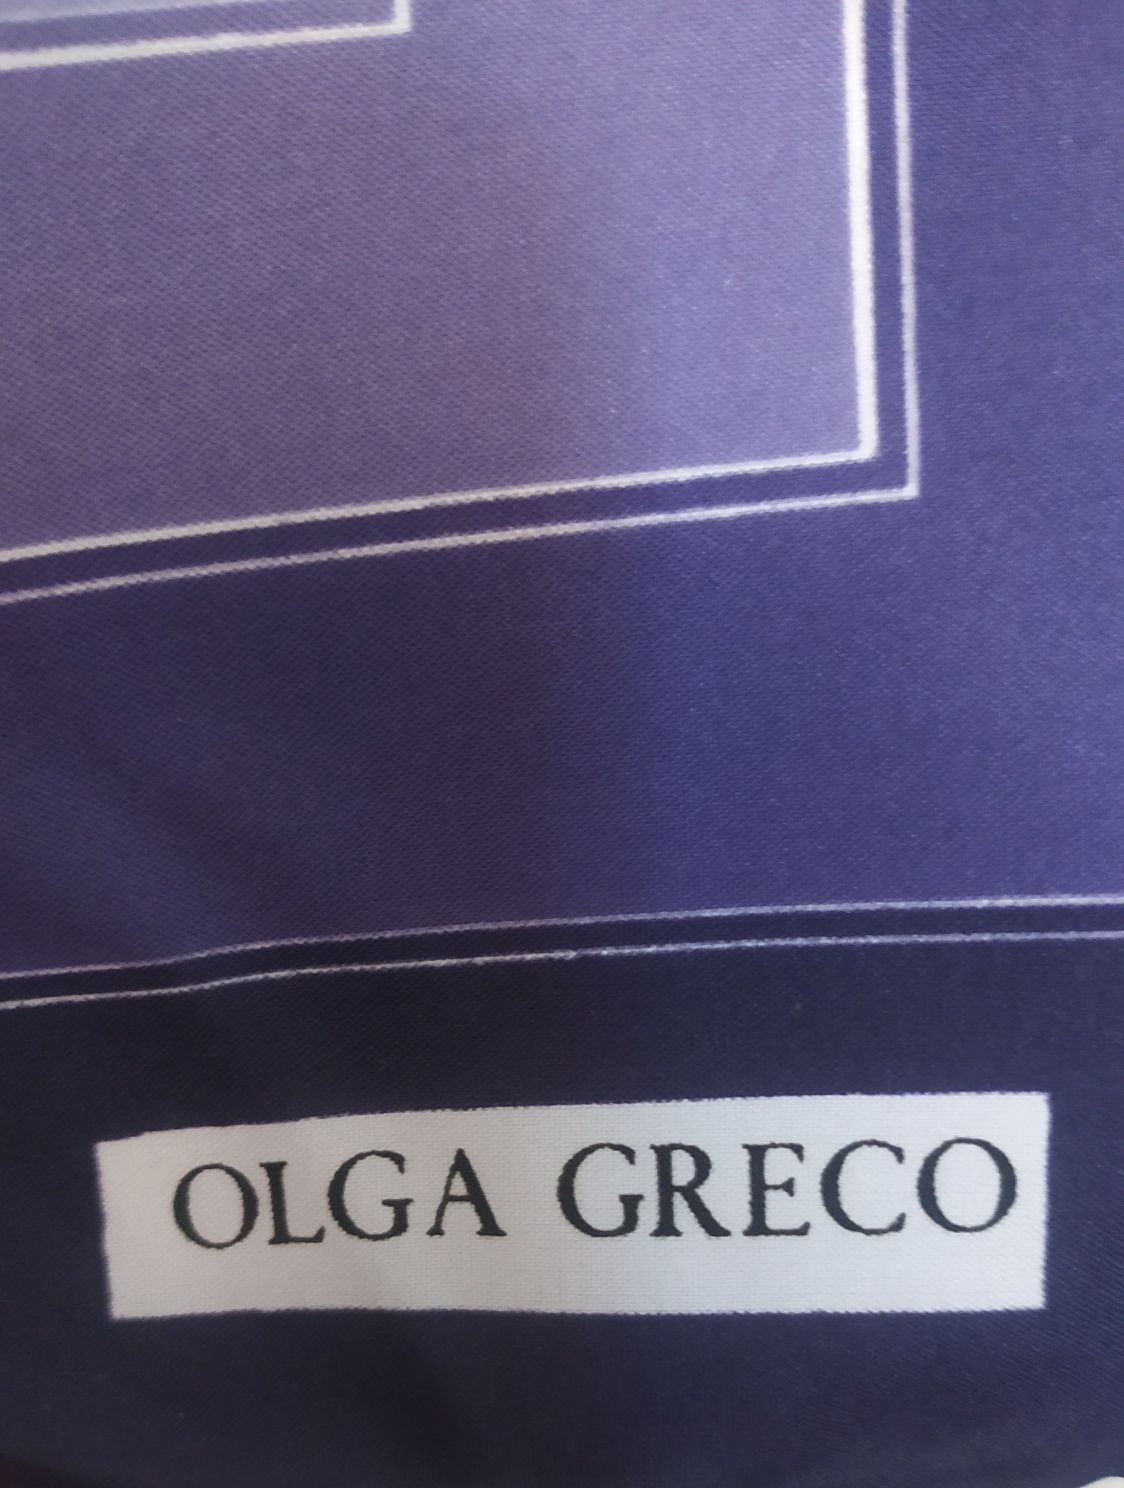 Шелковый подписной итальянский платок Olga Greco